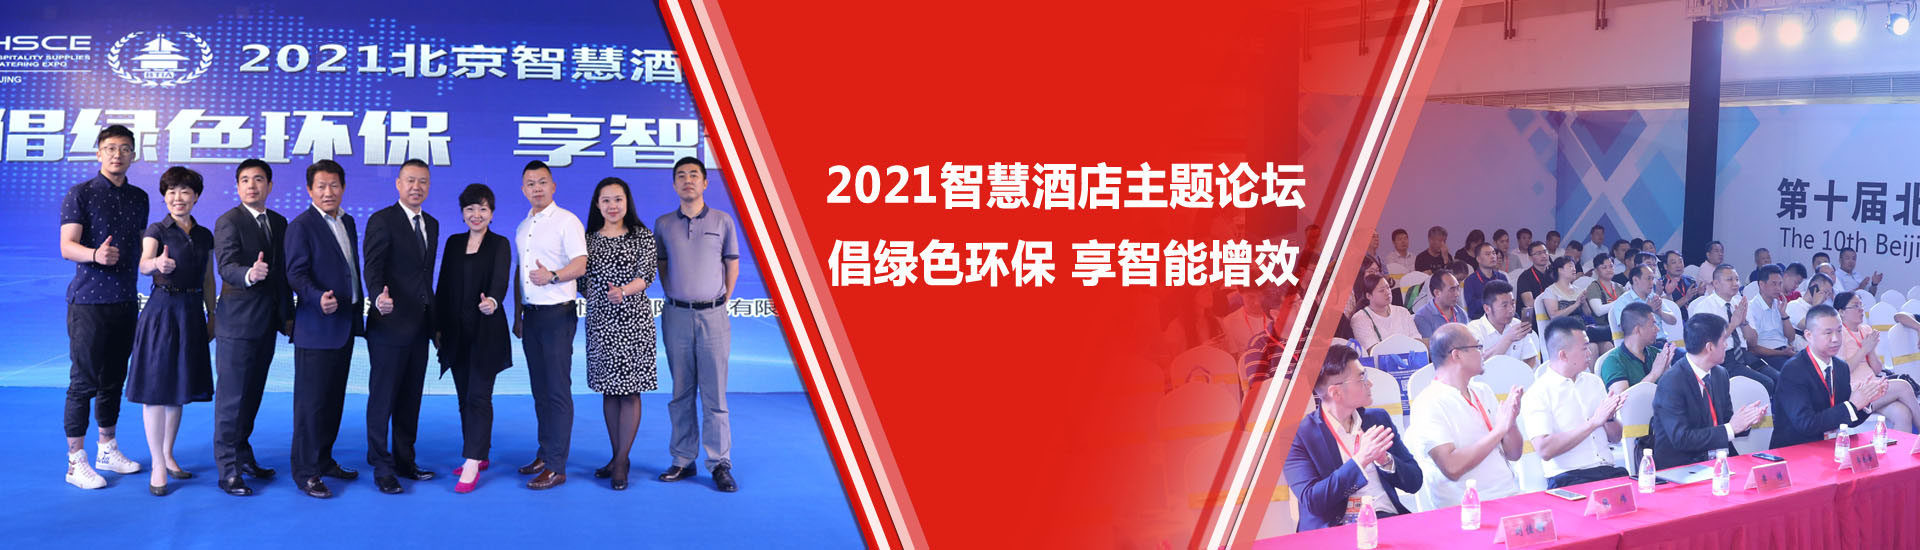 北京国际页岩气技术及装备展览会